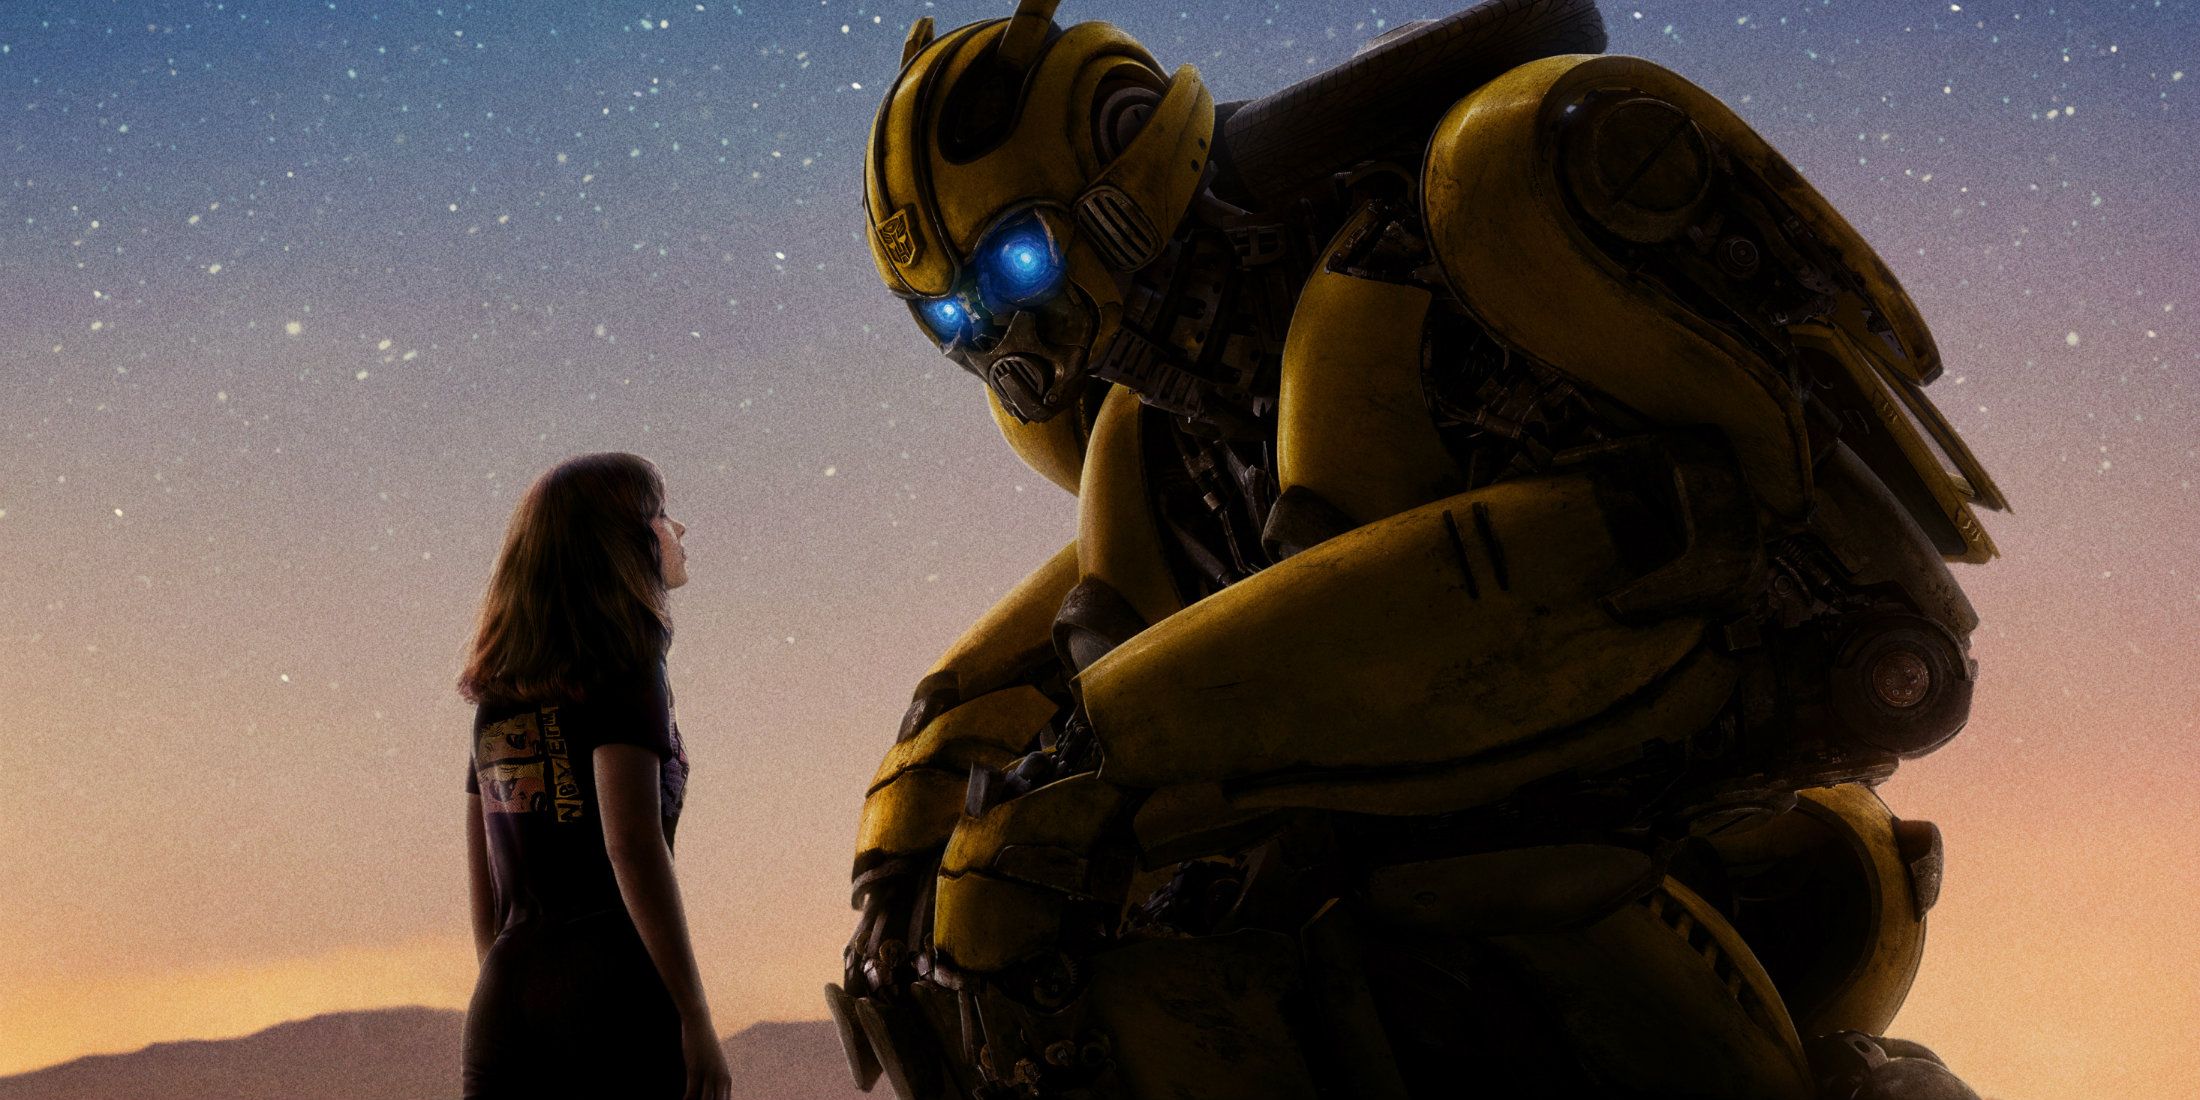 Tráiler de Bumblebee: Optimus Prime tiene una misión para Bee